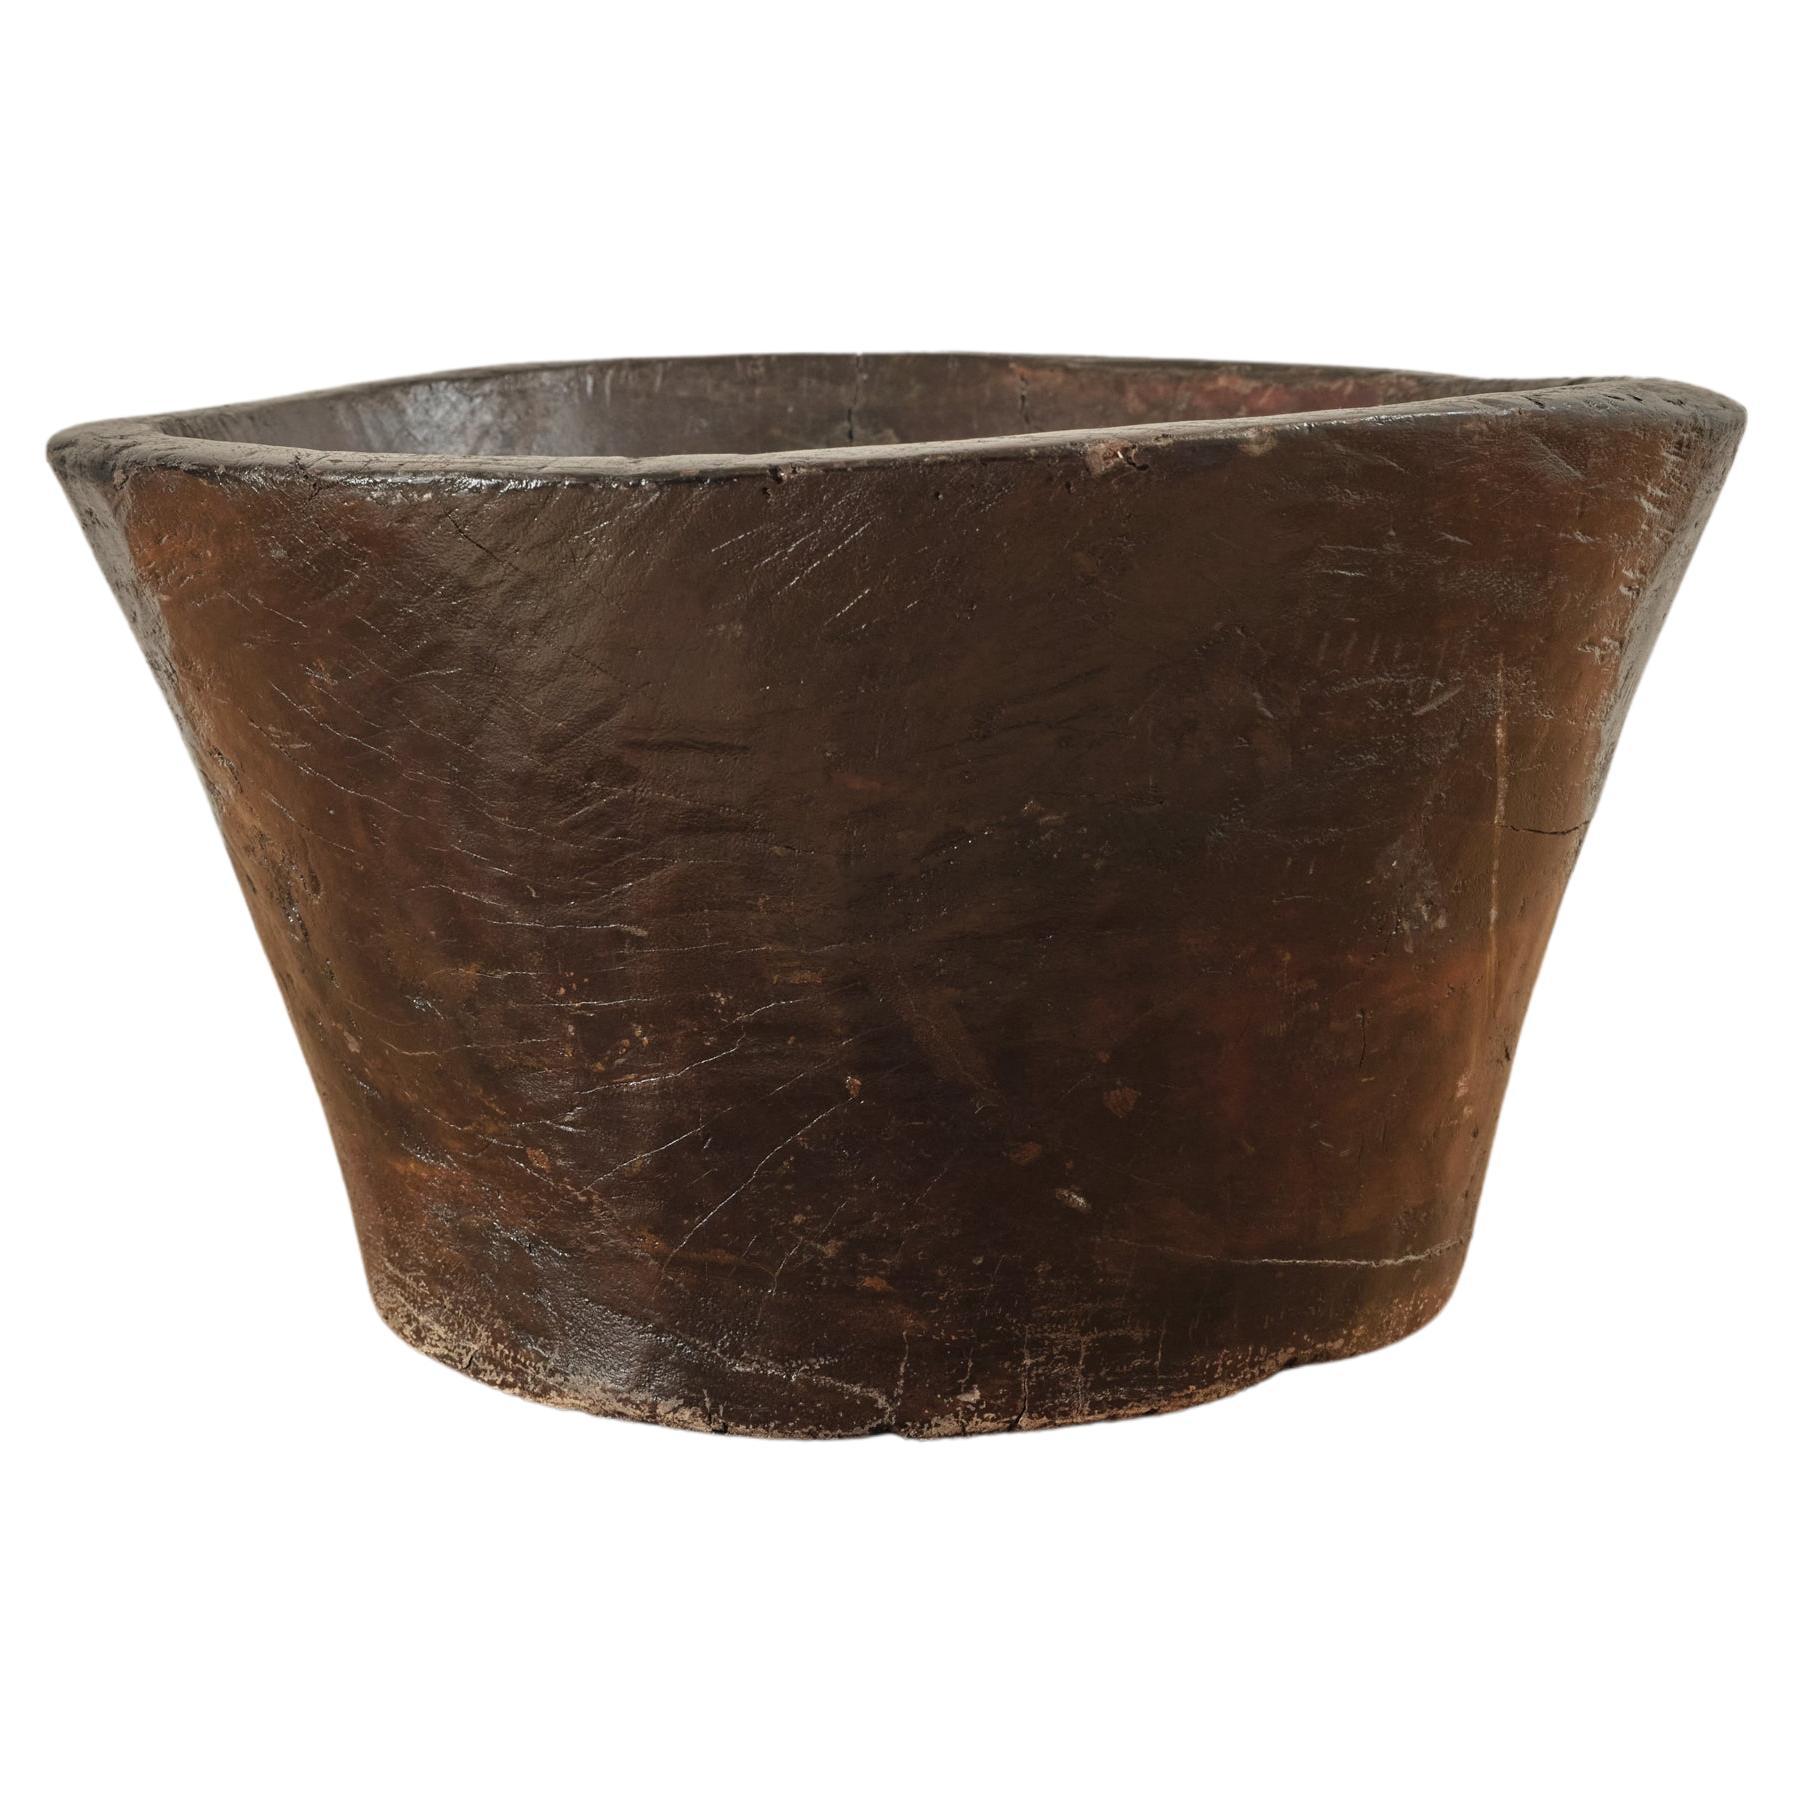 Carved Wooden Primitive Bowl. For Sale